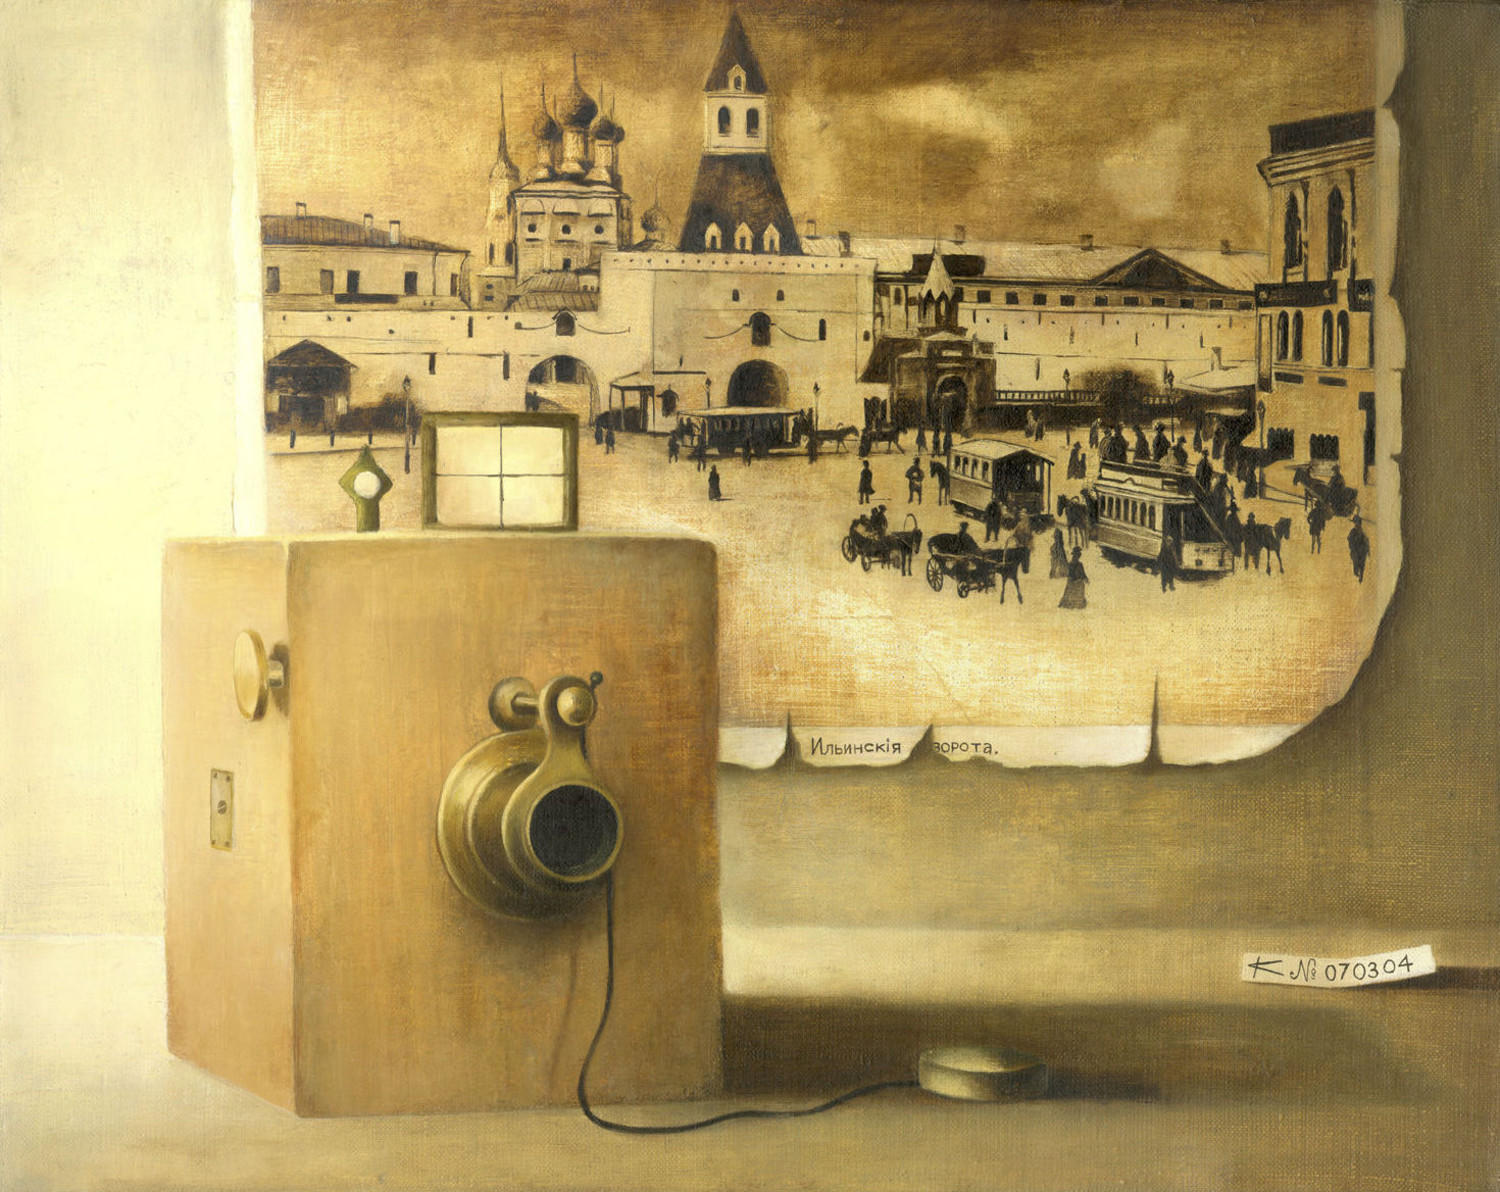 Ильинские ворота (Старое фото). Сергей Колеватых. 2004, холст, масло, 50x40